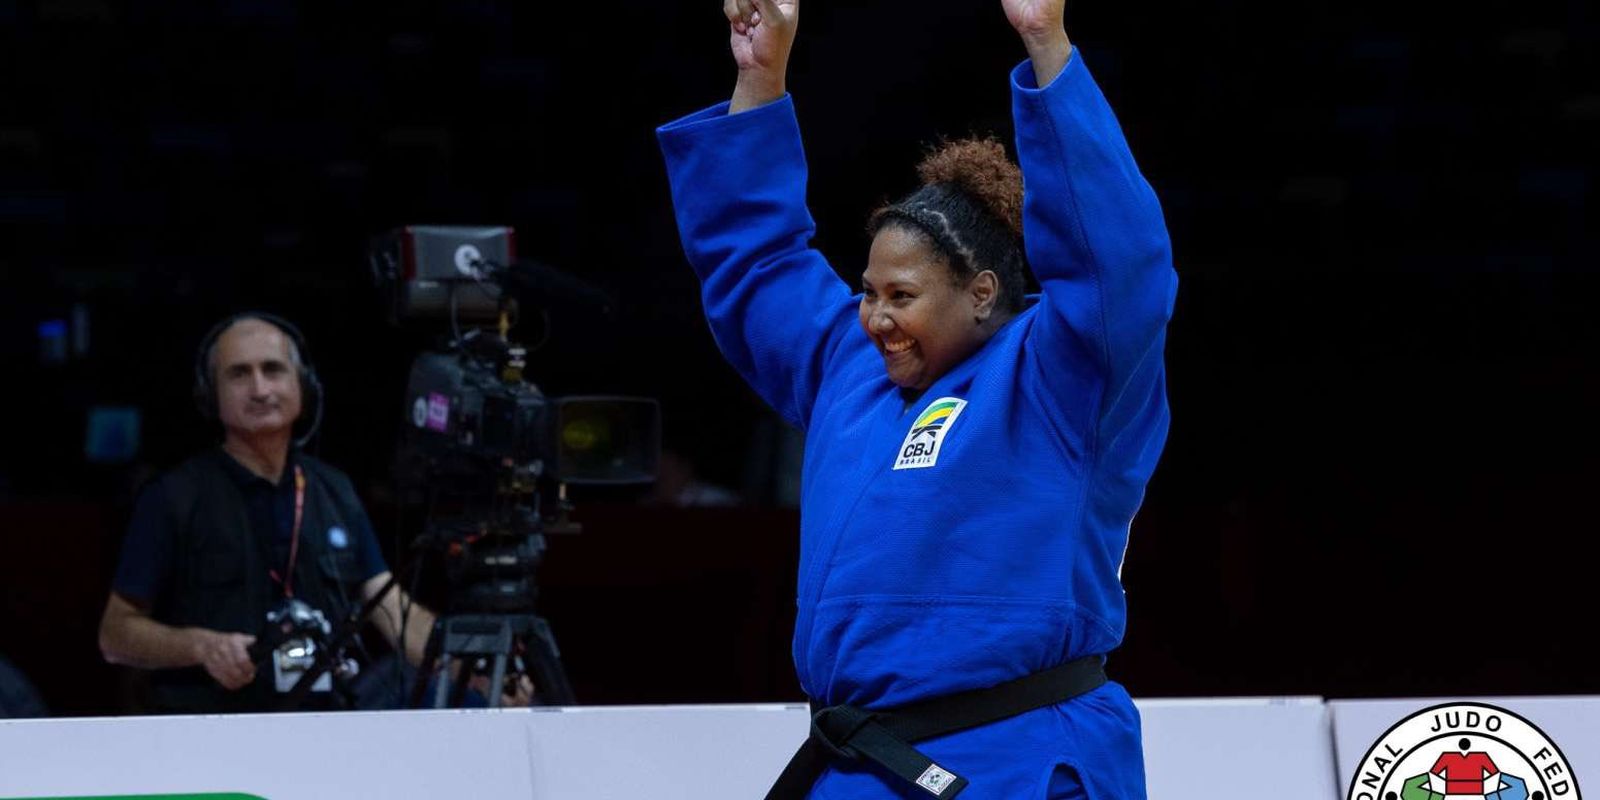 brasil-fatura-mais-2-ouros-e-1-bronze-no-grand-prix-de-judo-da-austria